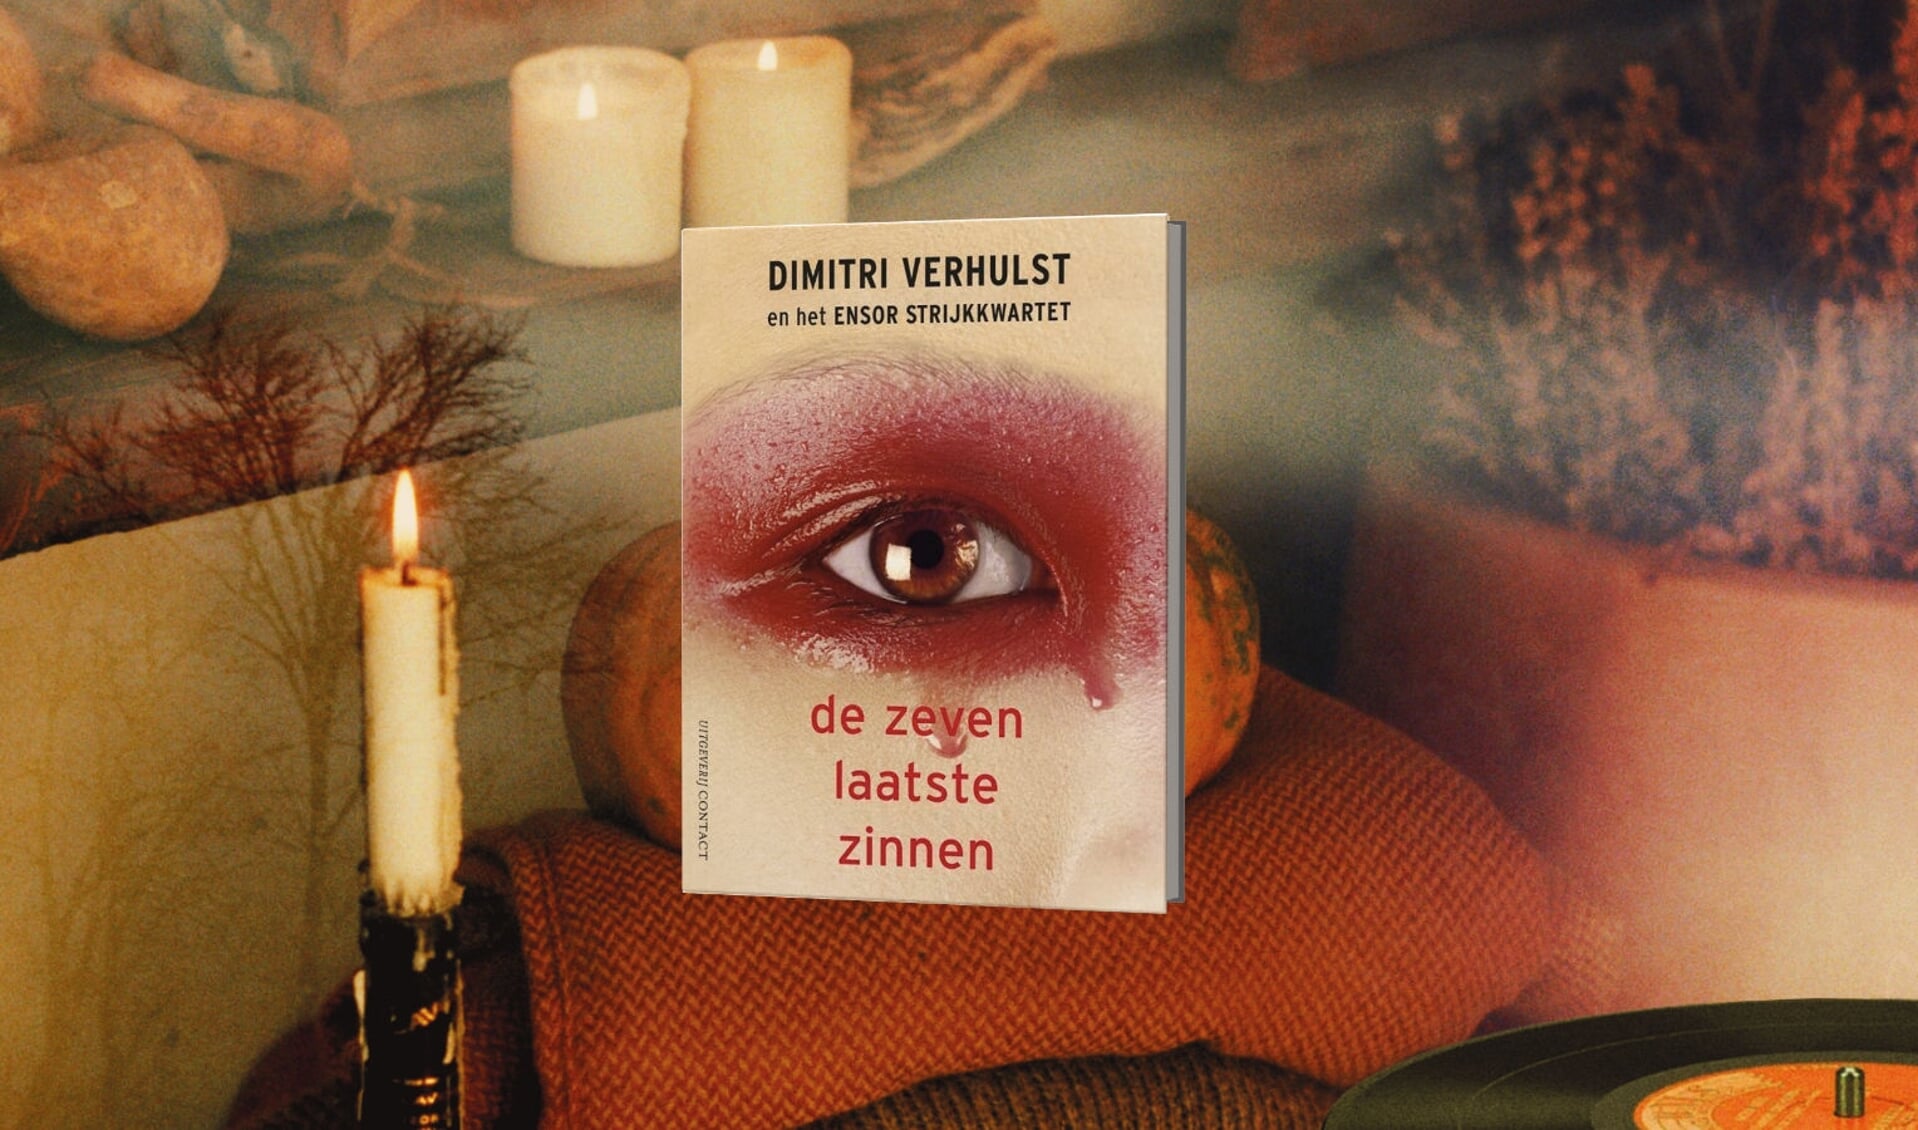 Literatuur & Muziek in Concertzaal Nieuwe Veste met sublieme verhalen van Dimitri Verhulst.